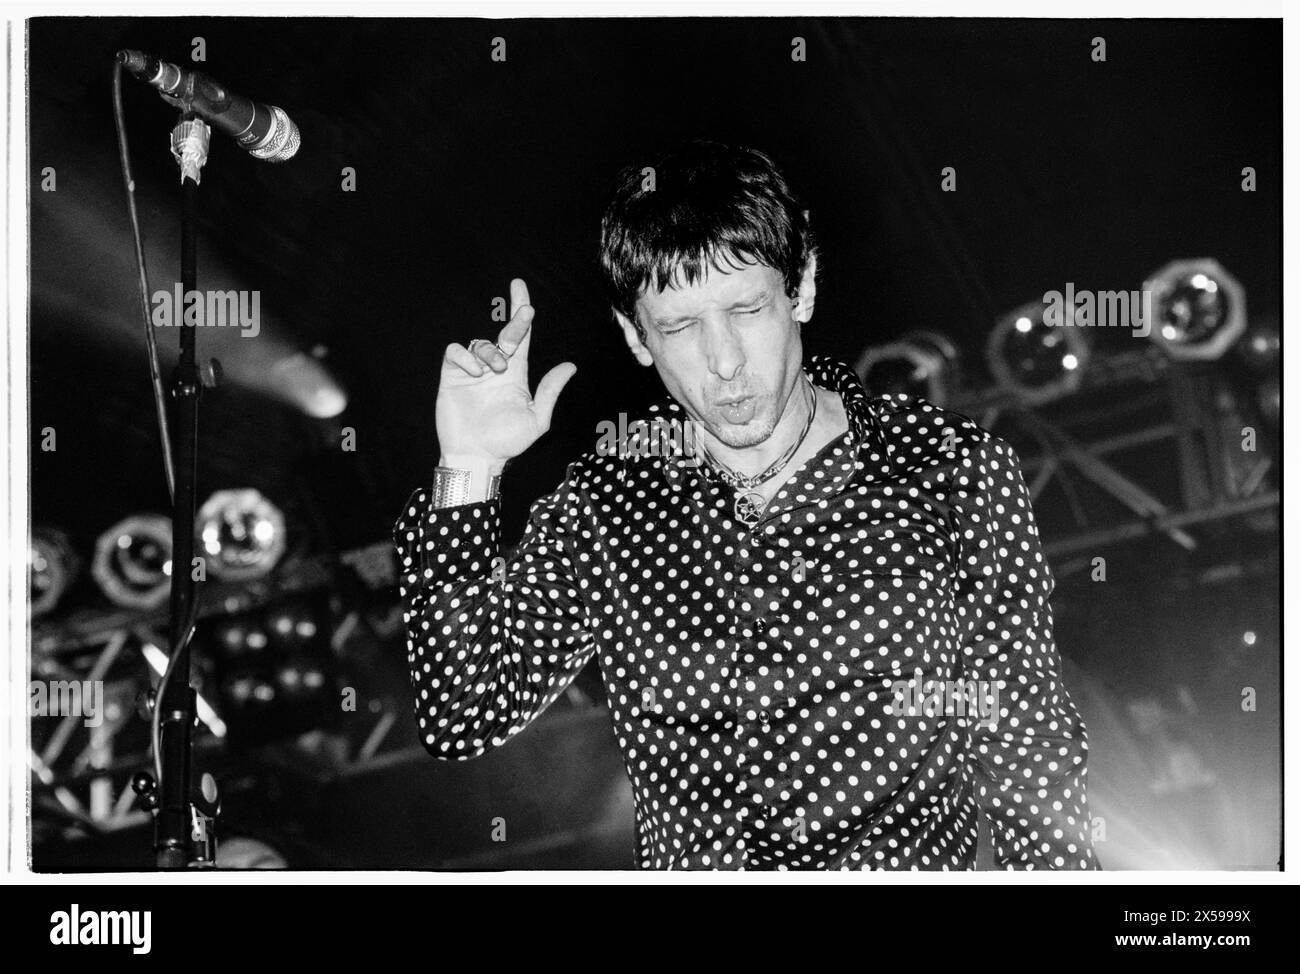 MERCURY Rev, CONCERT DU READING FESTIVAL, 2001 : Jonathan Donahue du groupe Mercury Rev sur la scène Melody Maker au Reading Festival, en Angleterre, au Royaume-Uni le 26 août 2001. Photo : Rob Watkins. INFO : Mercury Rev, un groupe de rock indépendant américain formé en 1989 à Buffalo, New York, a été acclamé pour ses paysages sonores de rêve et son approche expérimentale. Des tubes comme « Goddess on a Hiway » mettent en valeur leurs mélodies éthérées et leurs influences psychédéliques, consolidant ainsi leur statut de pionniers du rock indépendant. Banque D'Images